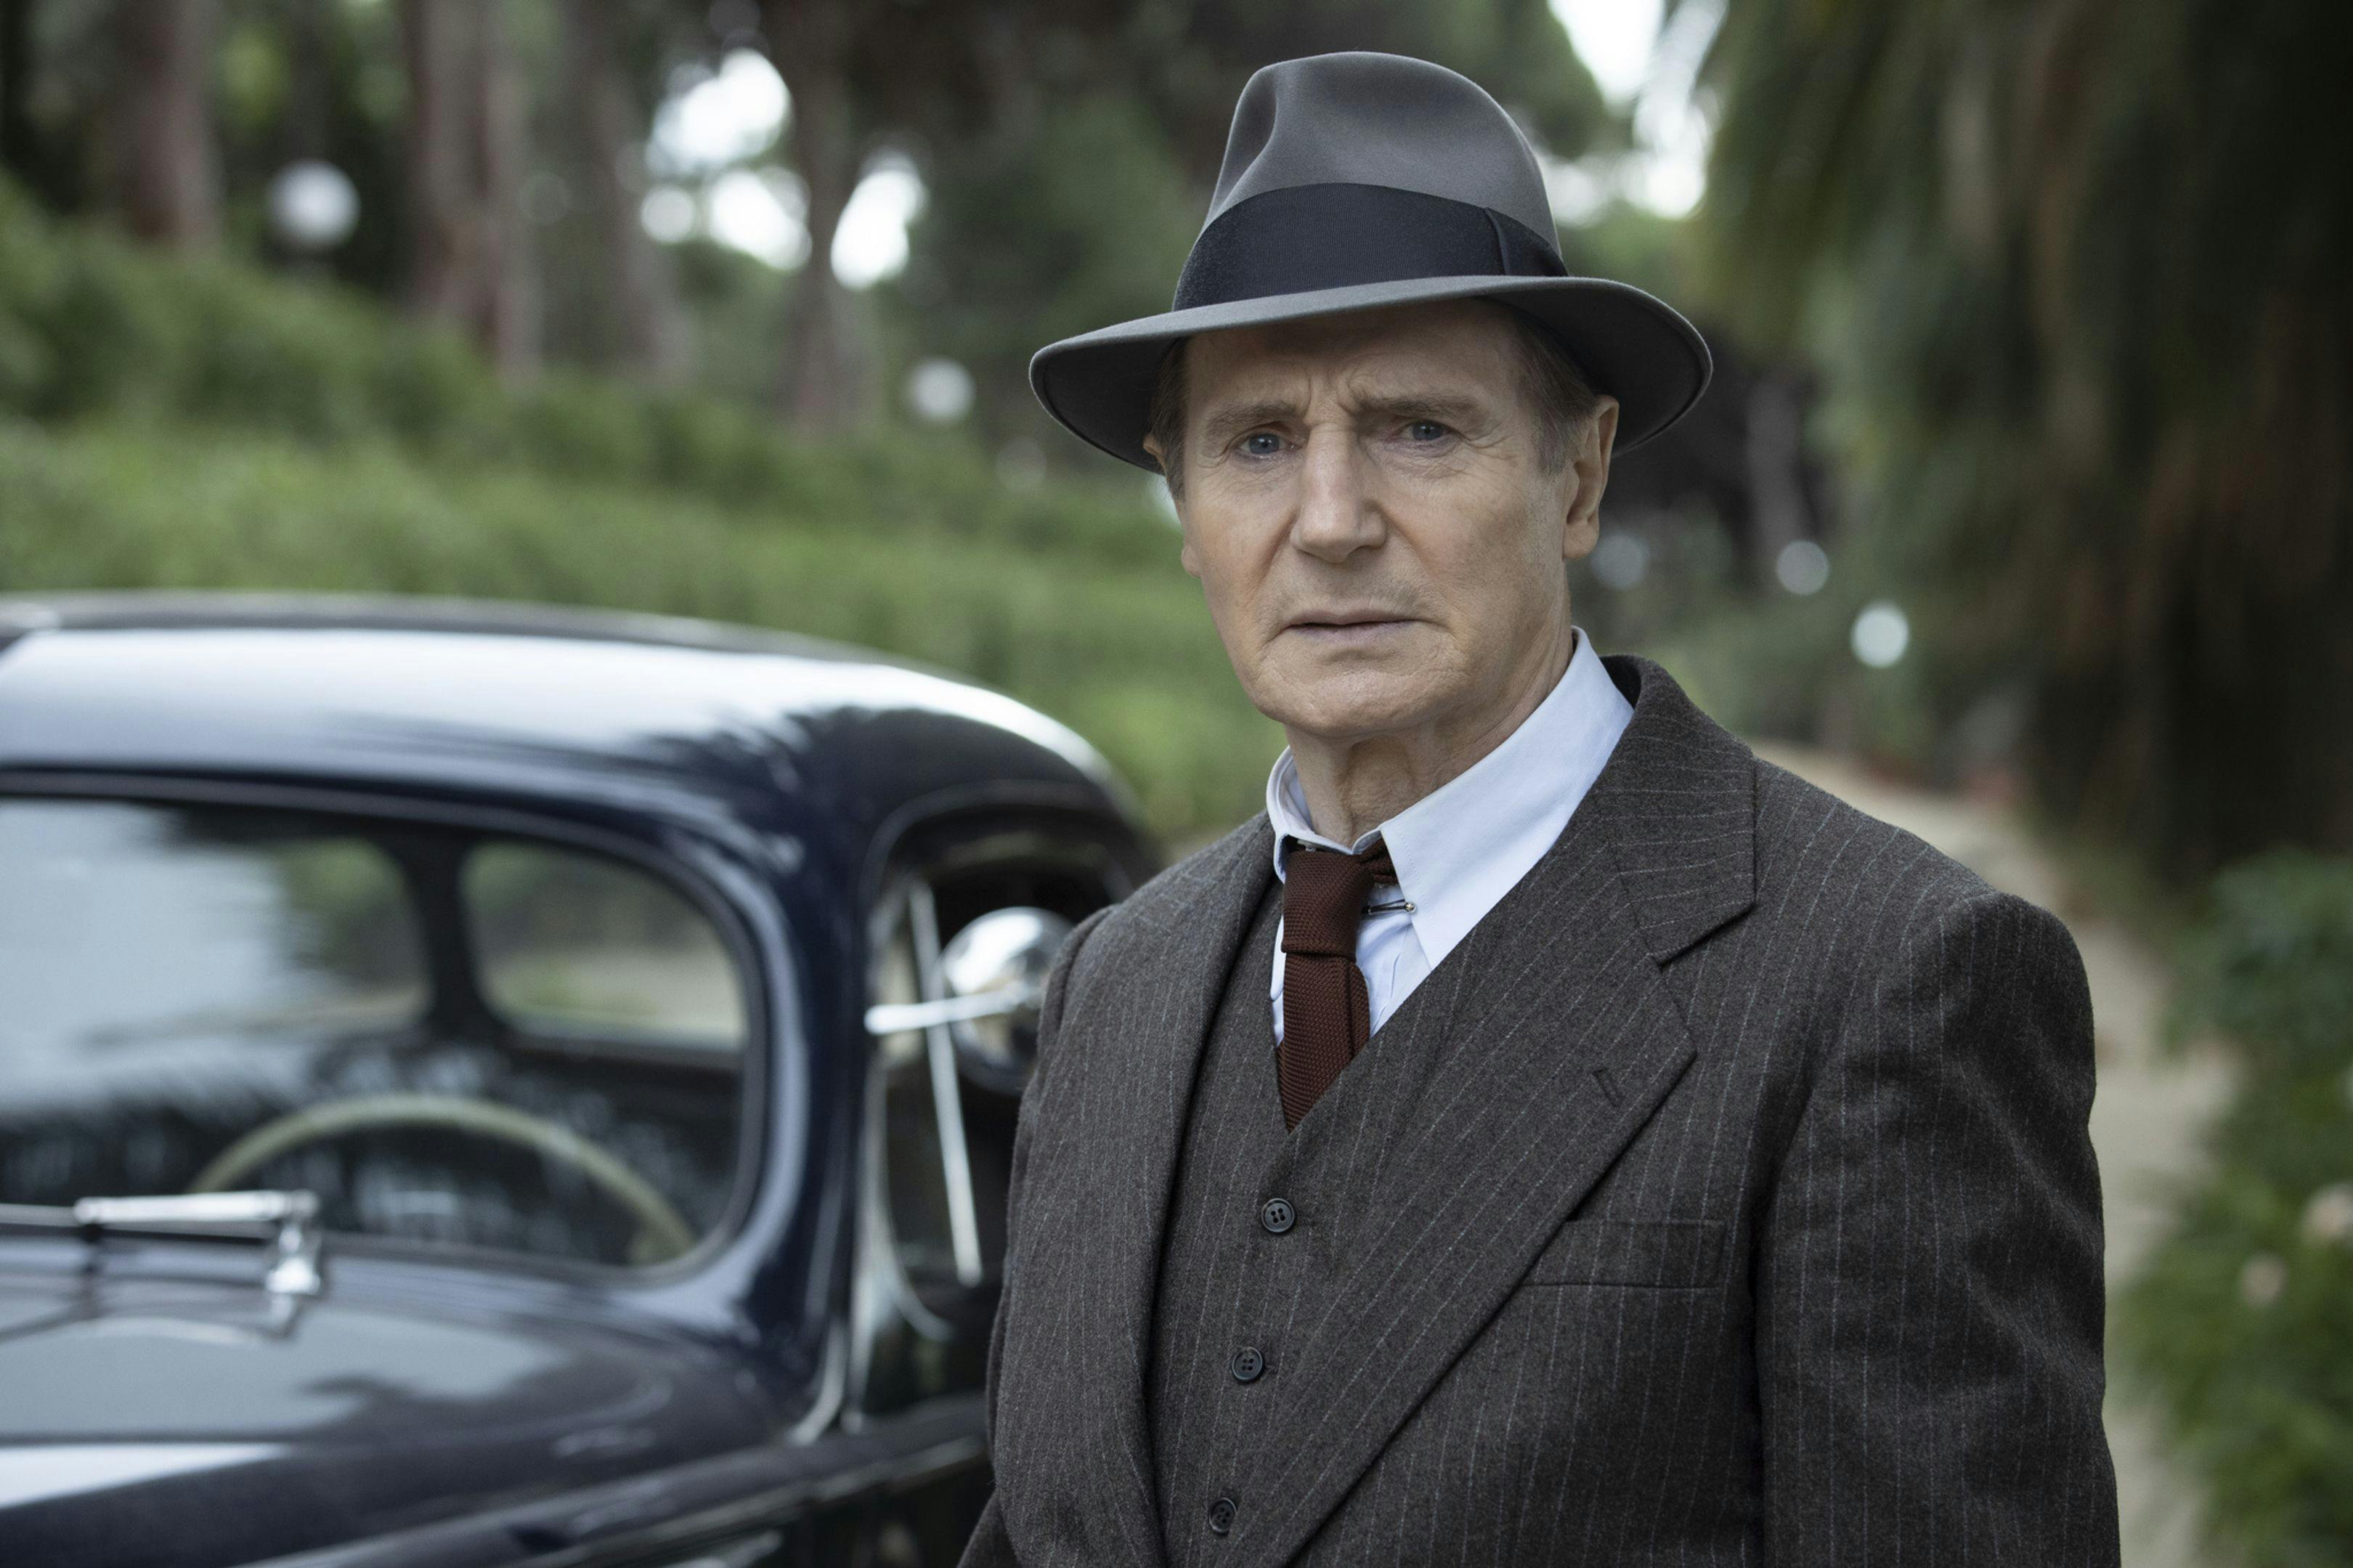 El actor Liam Neeson, en una imagen promocional de la película 'Marlowe', dirigida por Neil Jordan